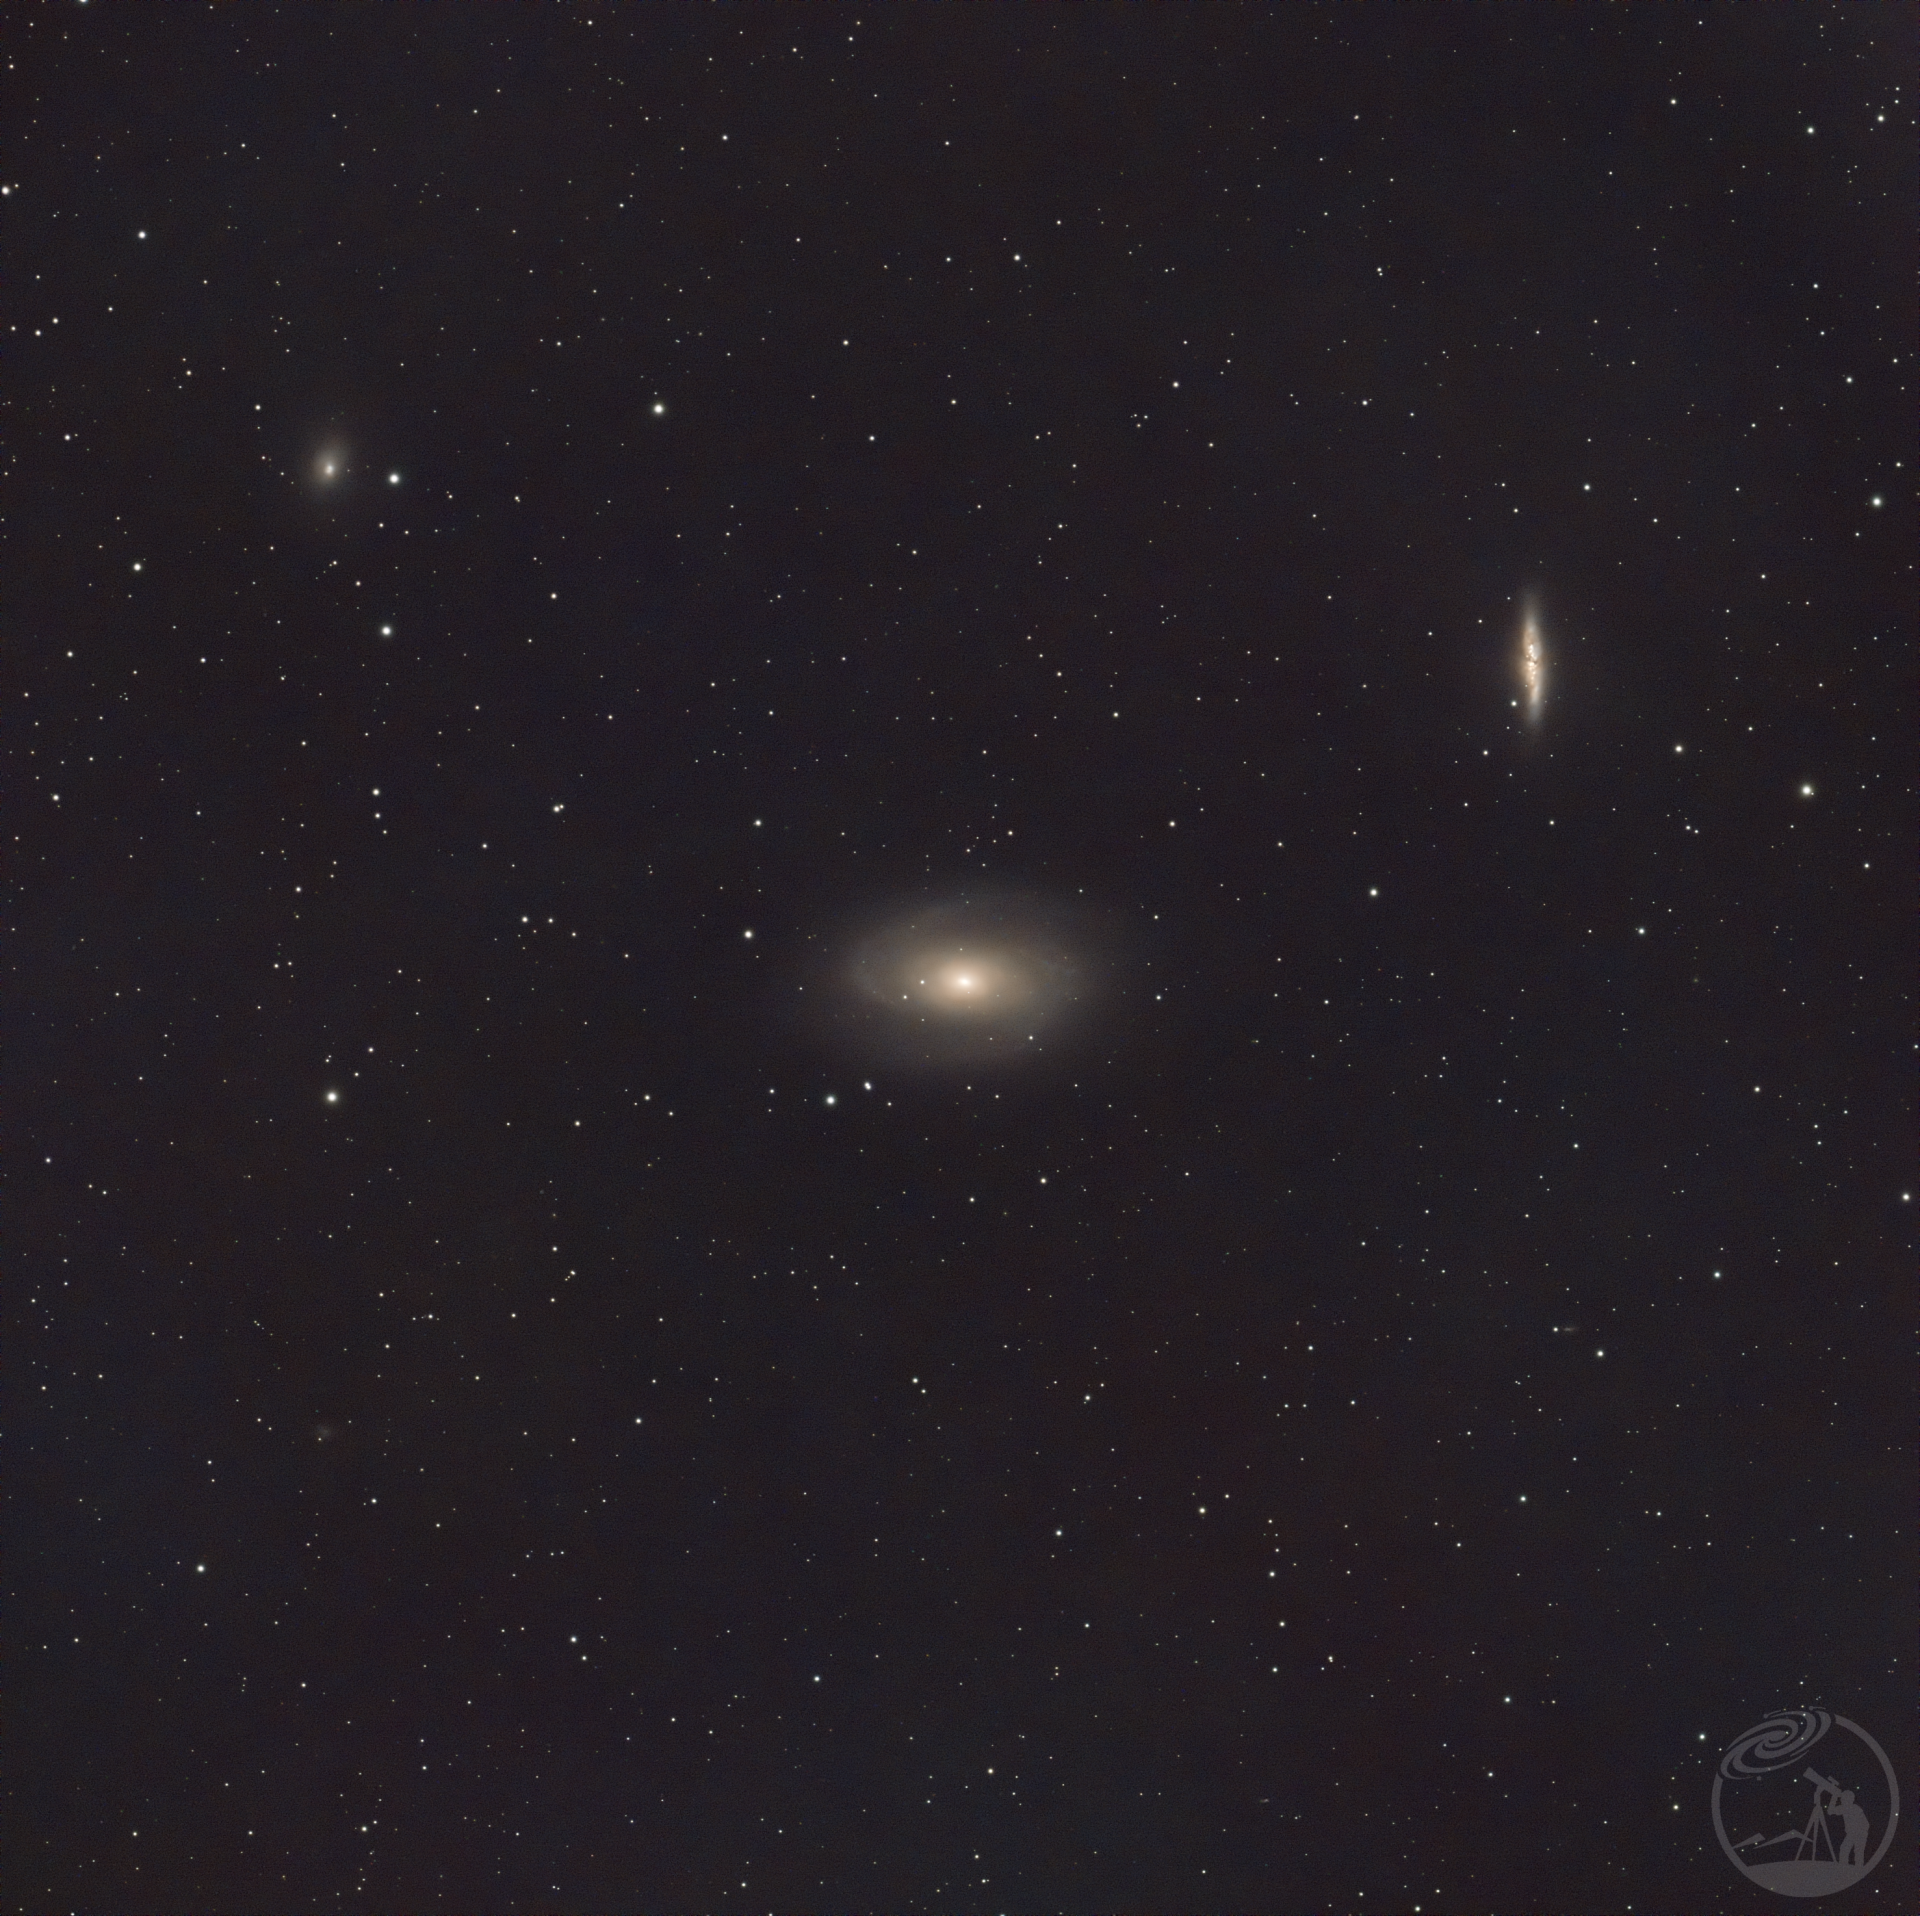 M81波德星系M82雪茄星系同框